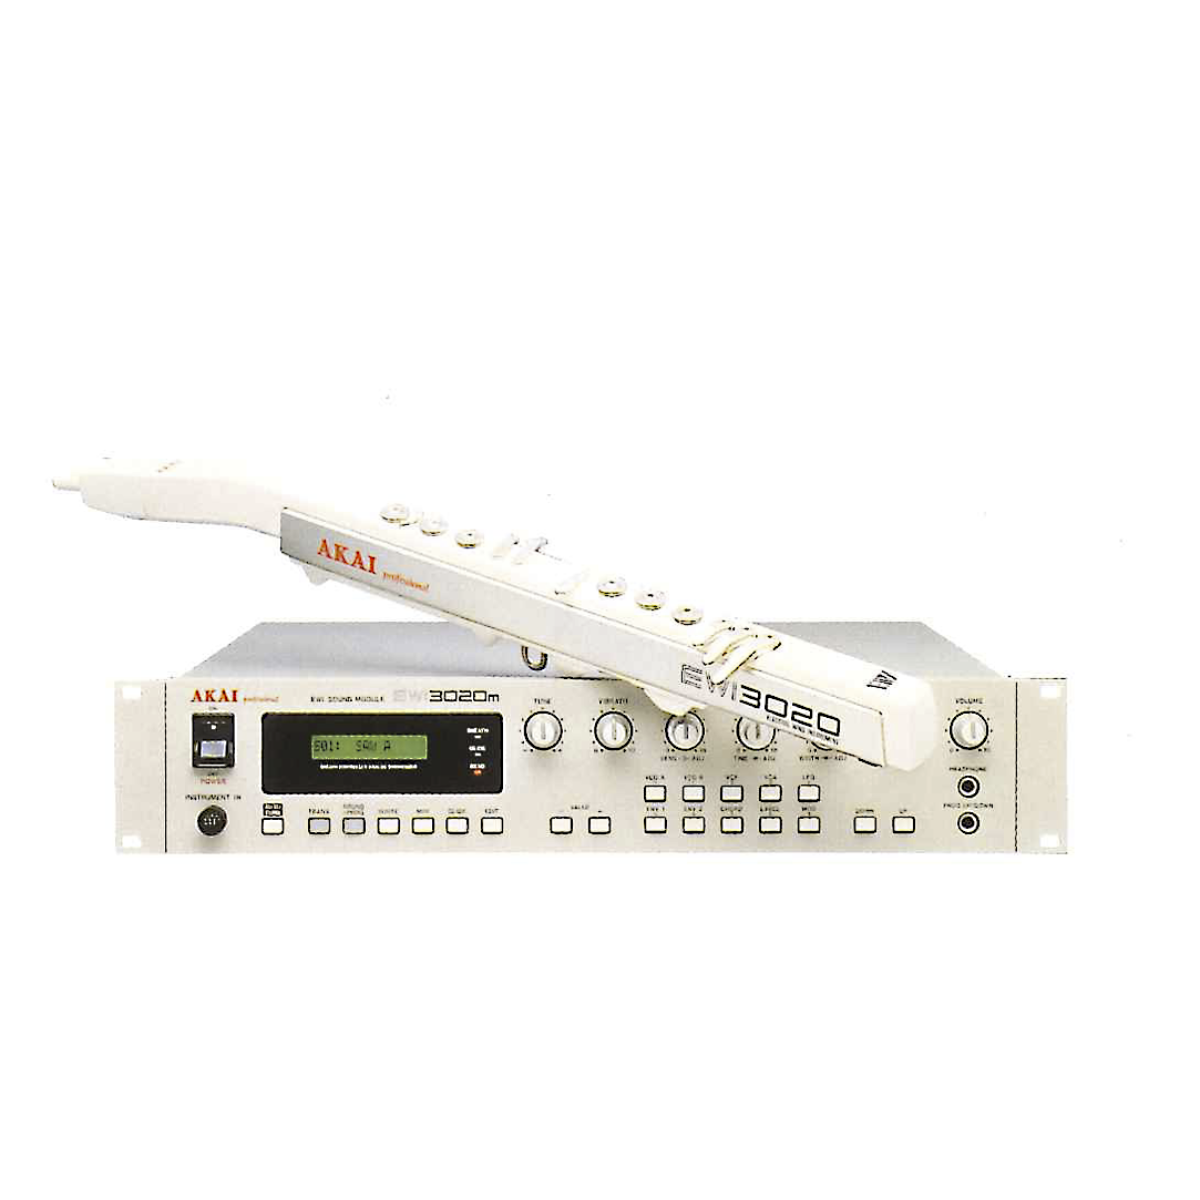 AKAI EWI3030m EWI3020 アナログ音源モジュール ウインドシンセ 